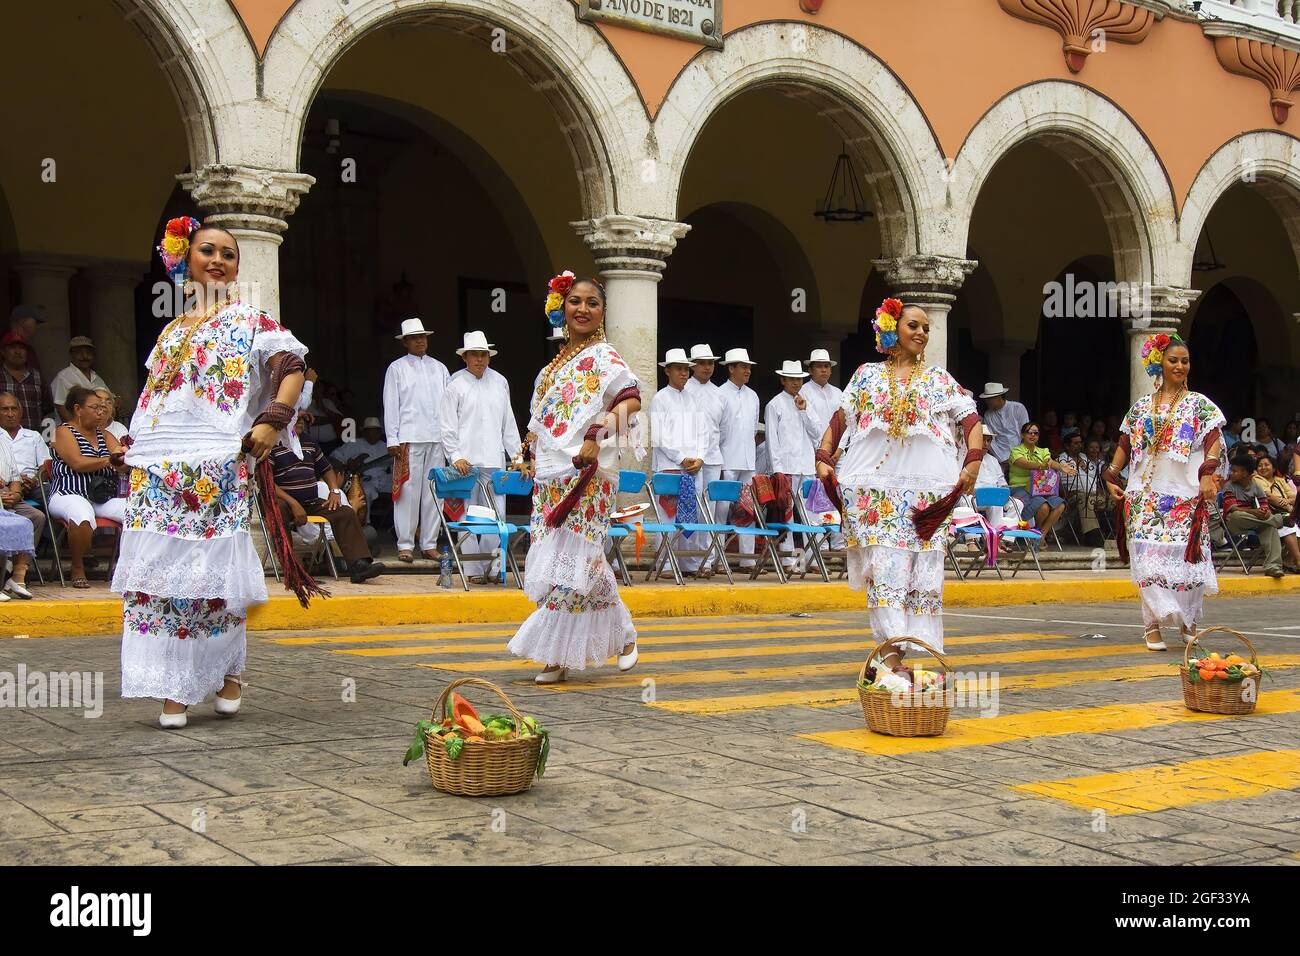 Merida, Messico: 01 aprile 2007 - Gruppo folcloristico locale che espone la loro cultura tradizionale e danza in strada durante la festa della domenica mattina, Foto Stock